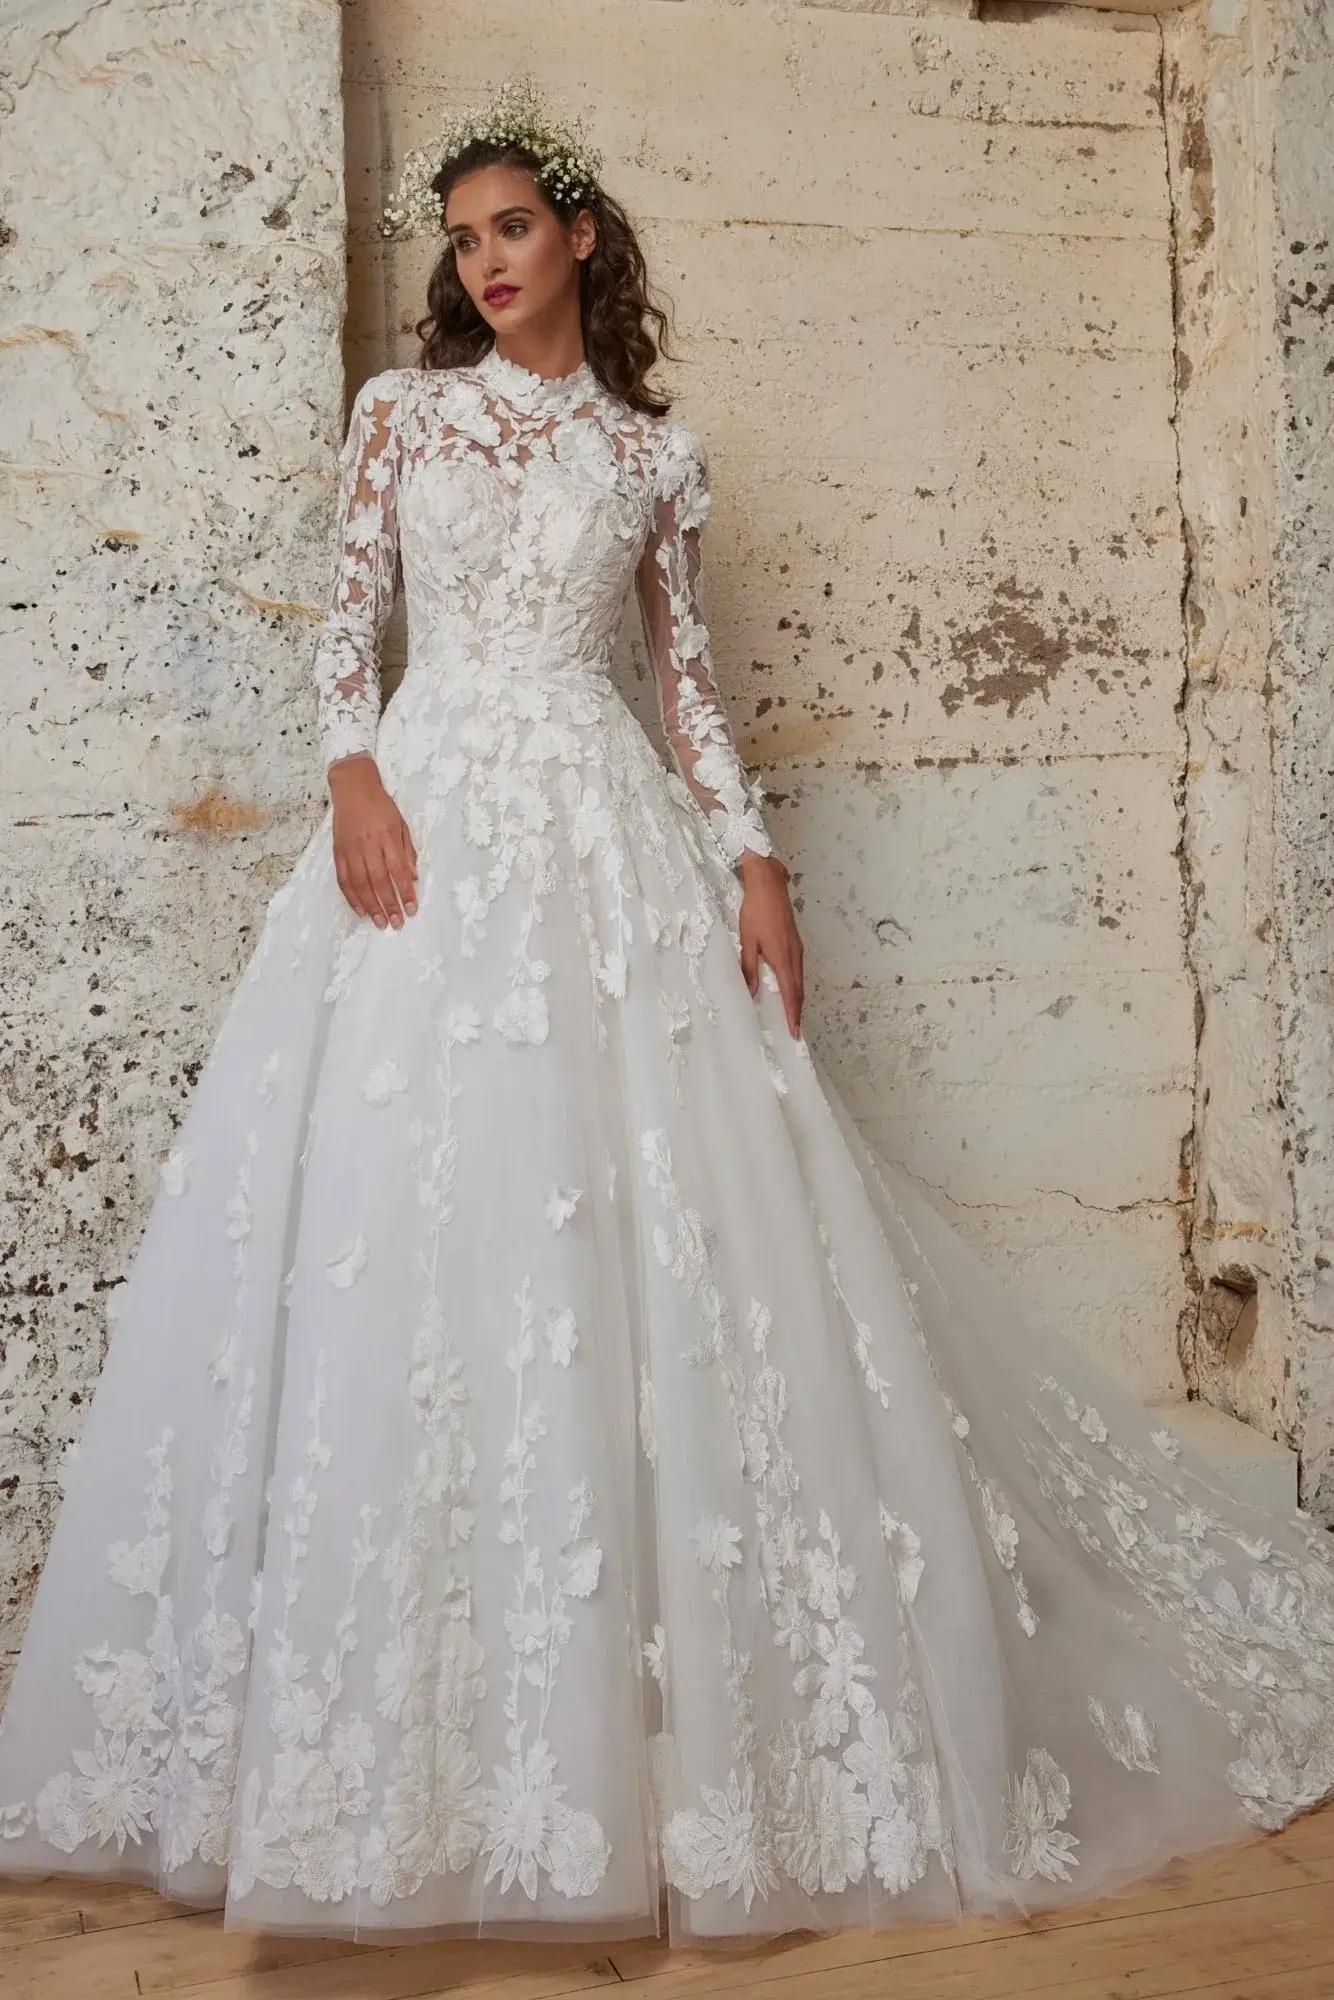 Calla Blanche bridal dress